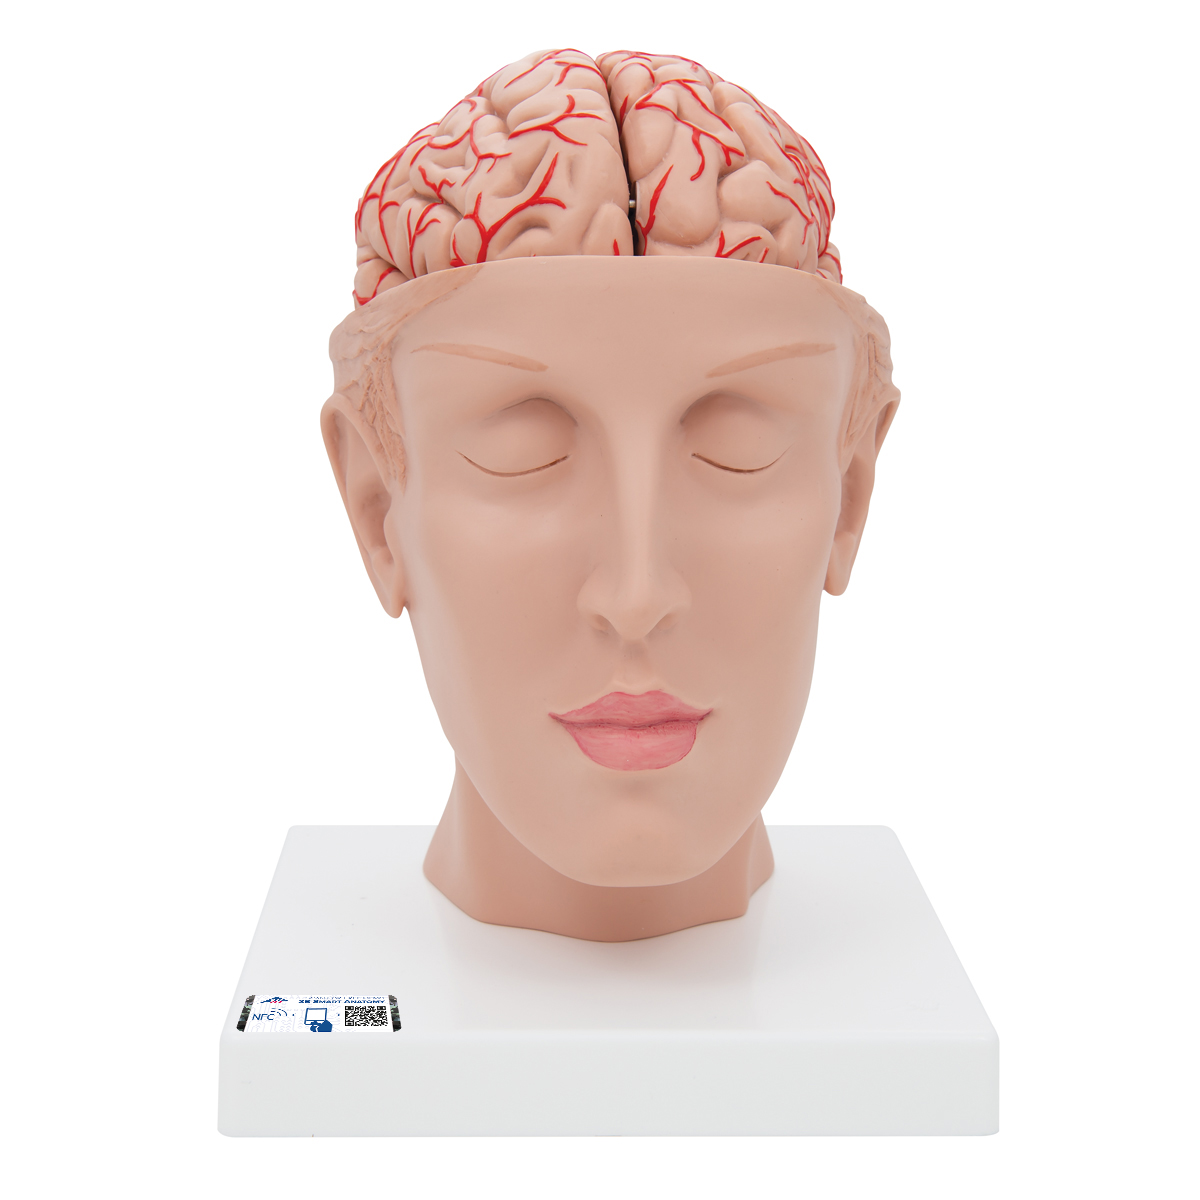 Menschliches Gehirnmodell mit Arterien auf Kopfbasis, 8-teilig - 3B Smart Anatomy, Bestellnummer 1017869, C25, 3B Scientific